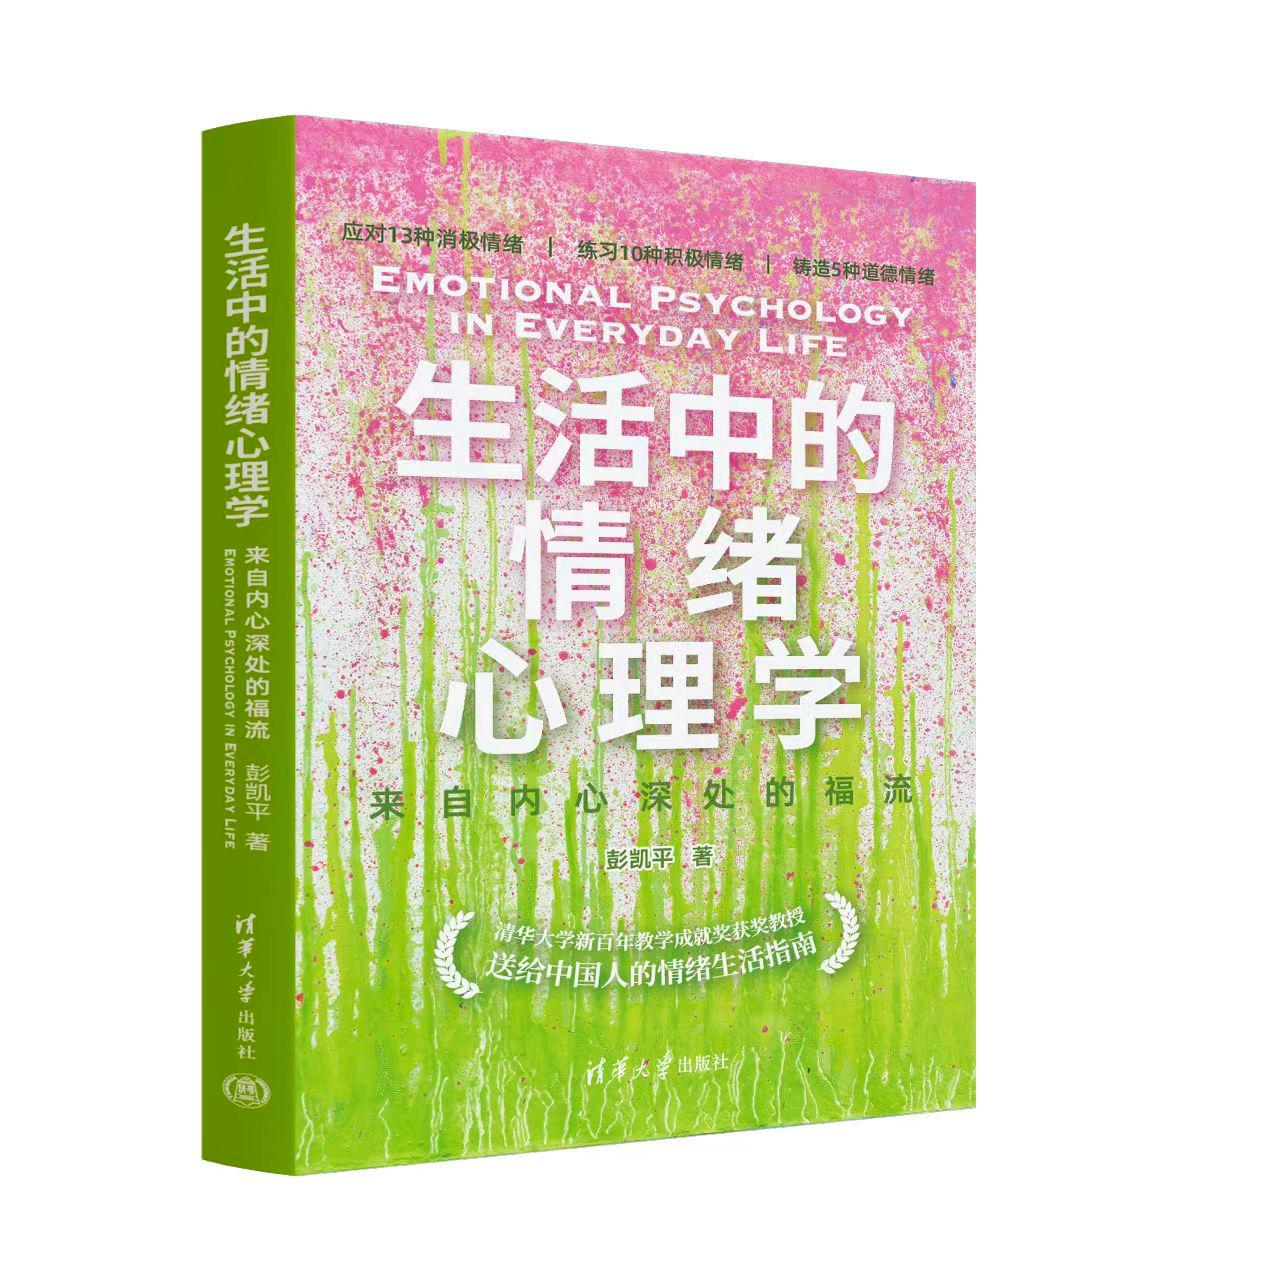 《生活中的情绪心理学》由清华社出版， 用书中的27种情绪理解自己和他人